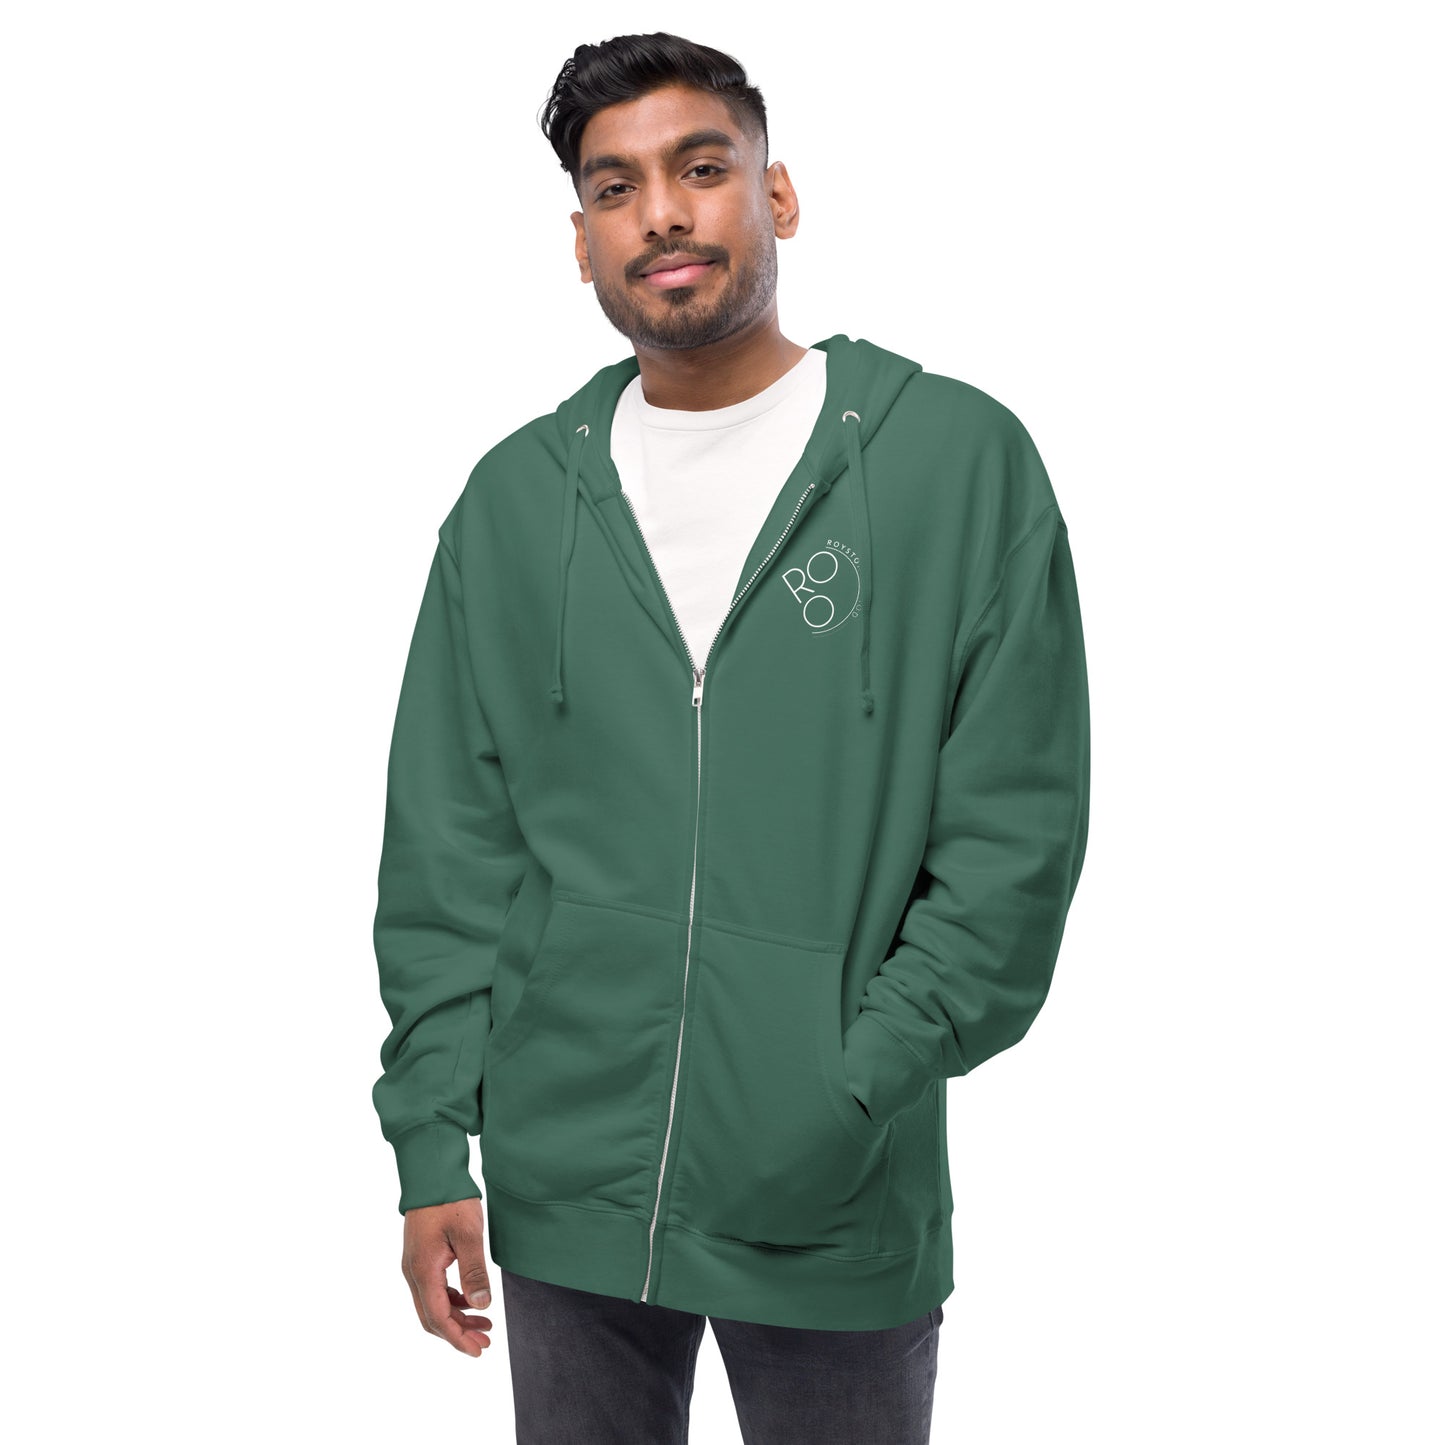 Fittest Over 50 Unisex fleece zip up hoodie